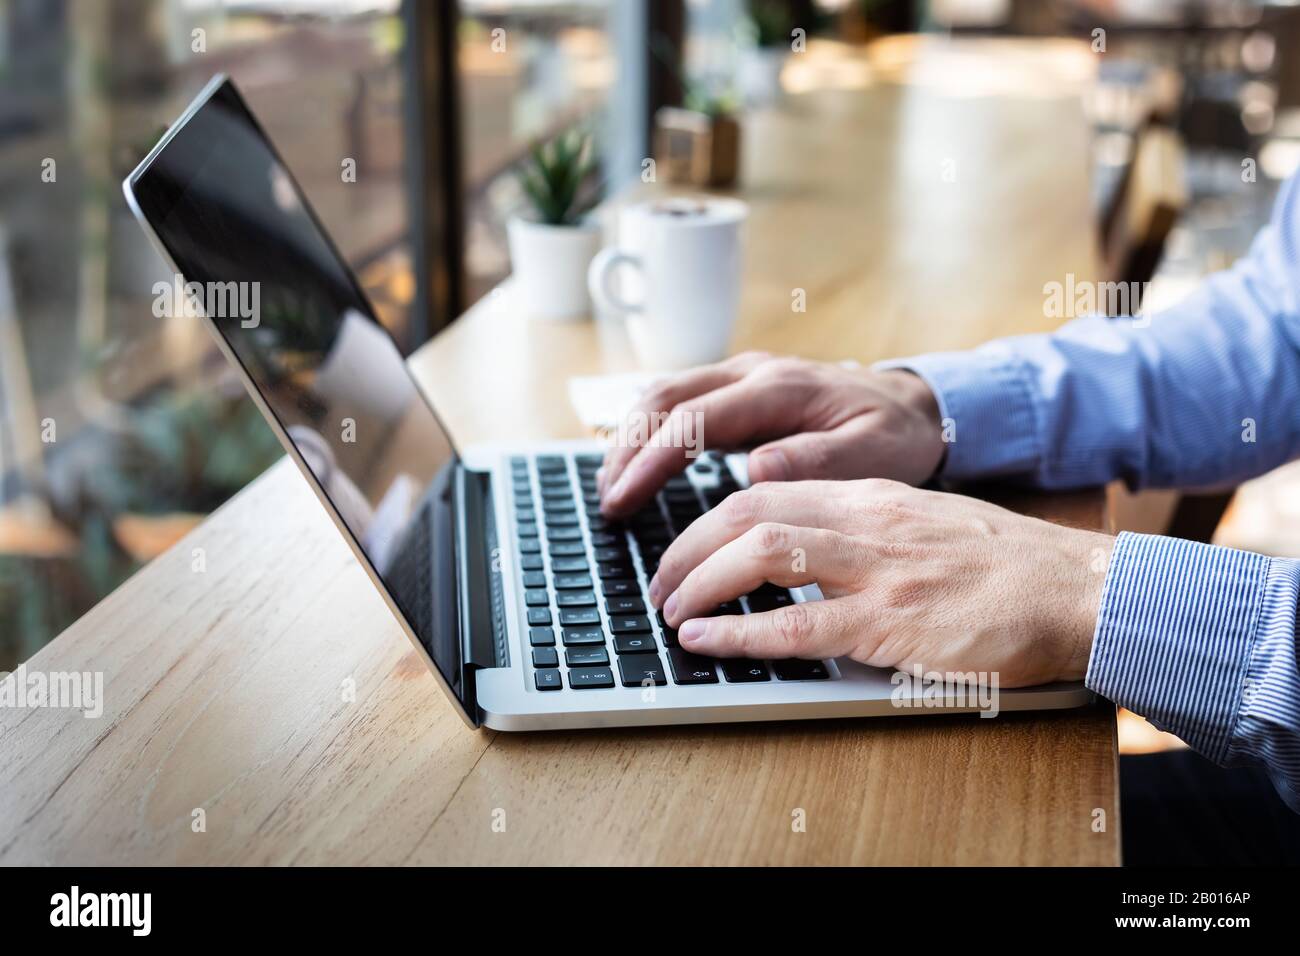 Saisie des mains sur le clavier de l'ordinateur portable, la personne qui écrit un e-mail ou un document de rapport dans un café avec Internet WiFi et café, style décontracté, espace de copie Banque D'Images